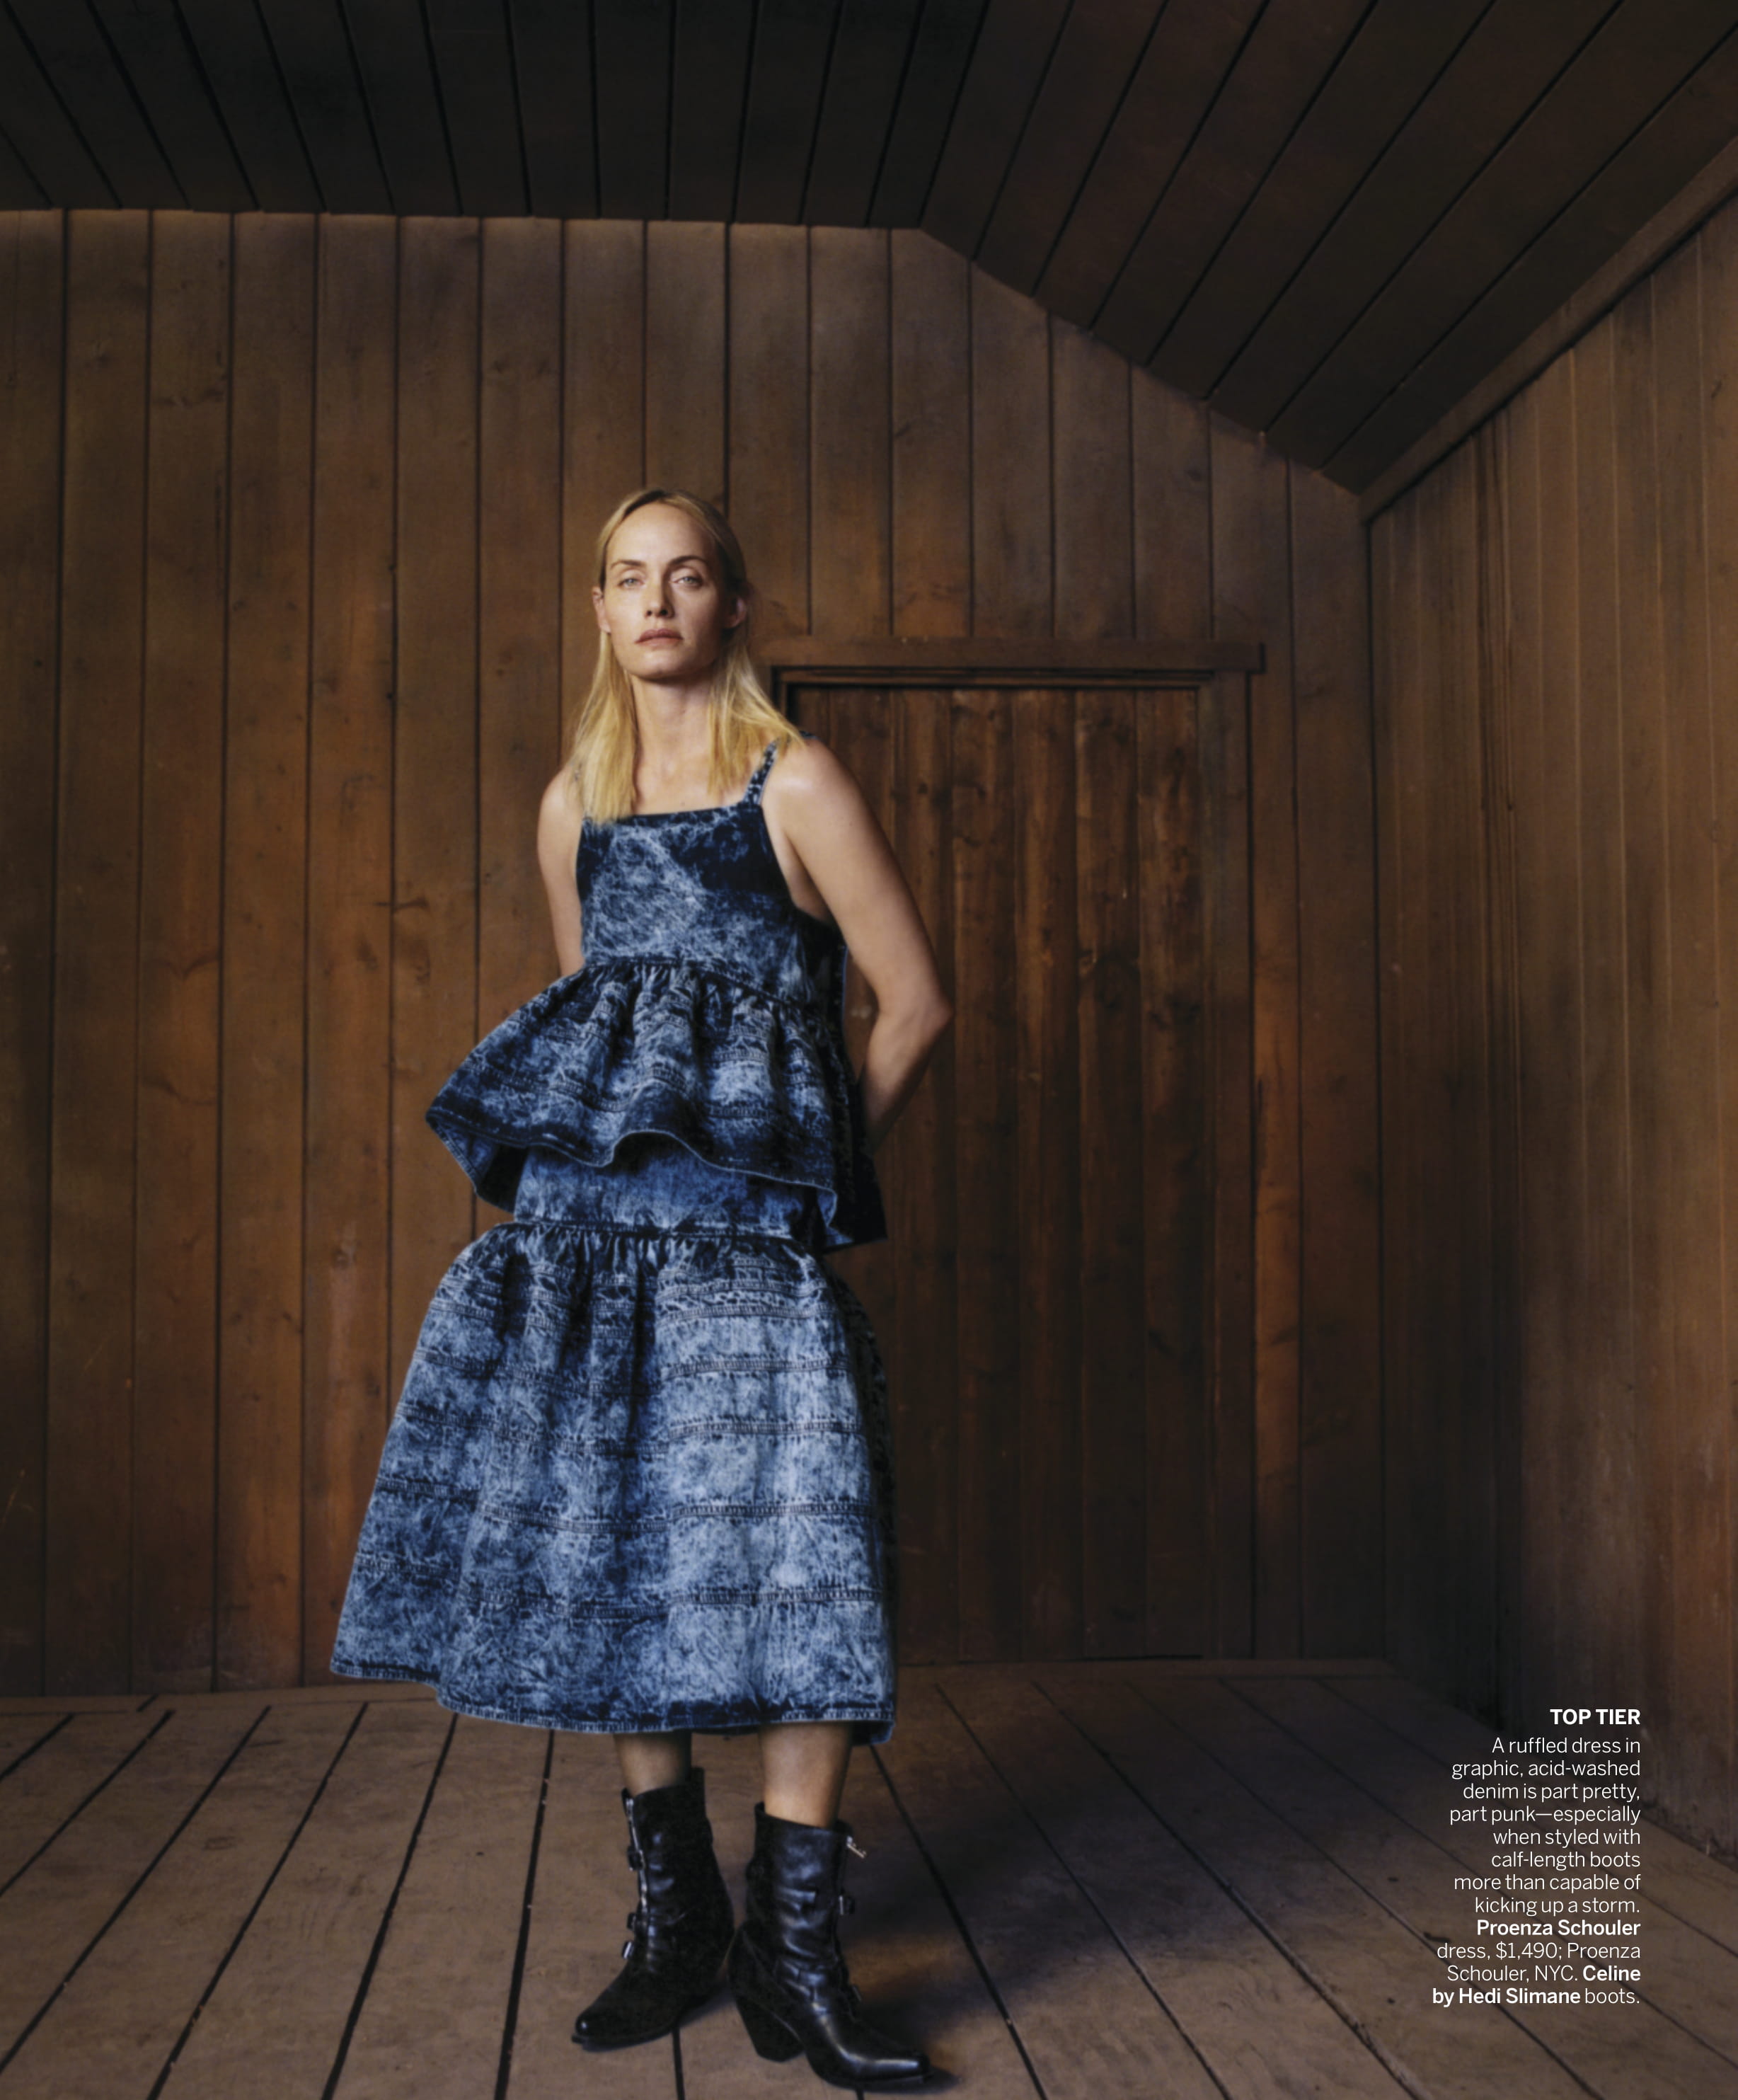 Zoe Ghertner Amber Valetta Gemma Ward Vogue US Mar 2019 (6).jpg